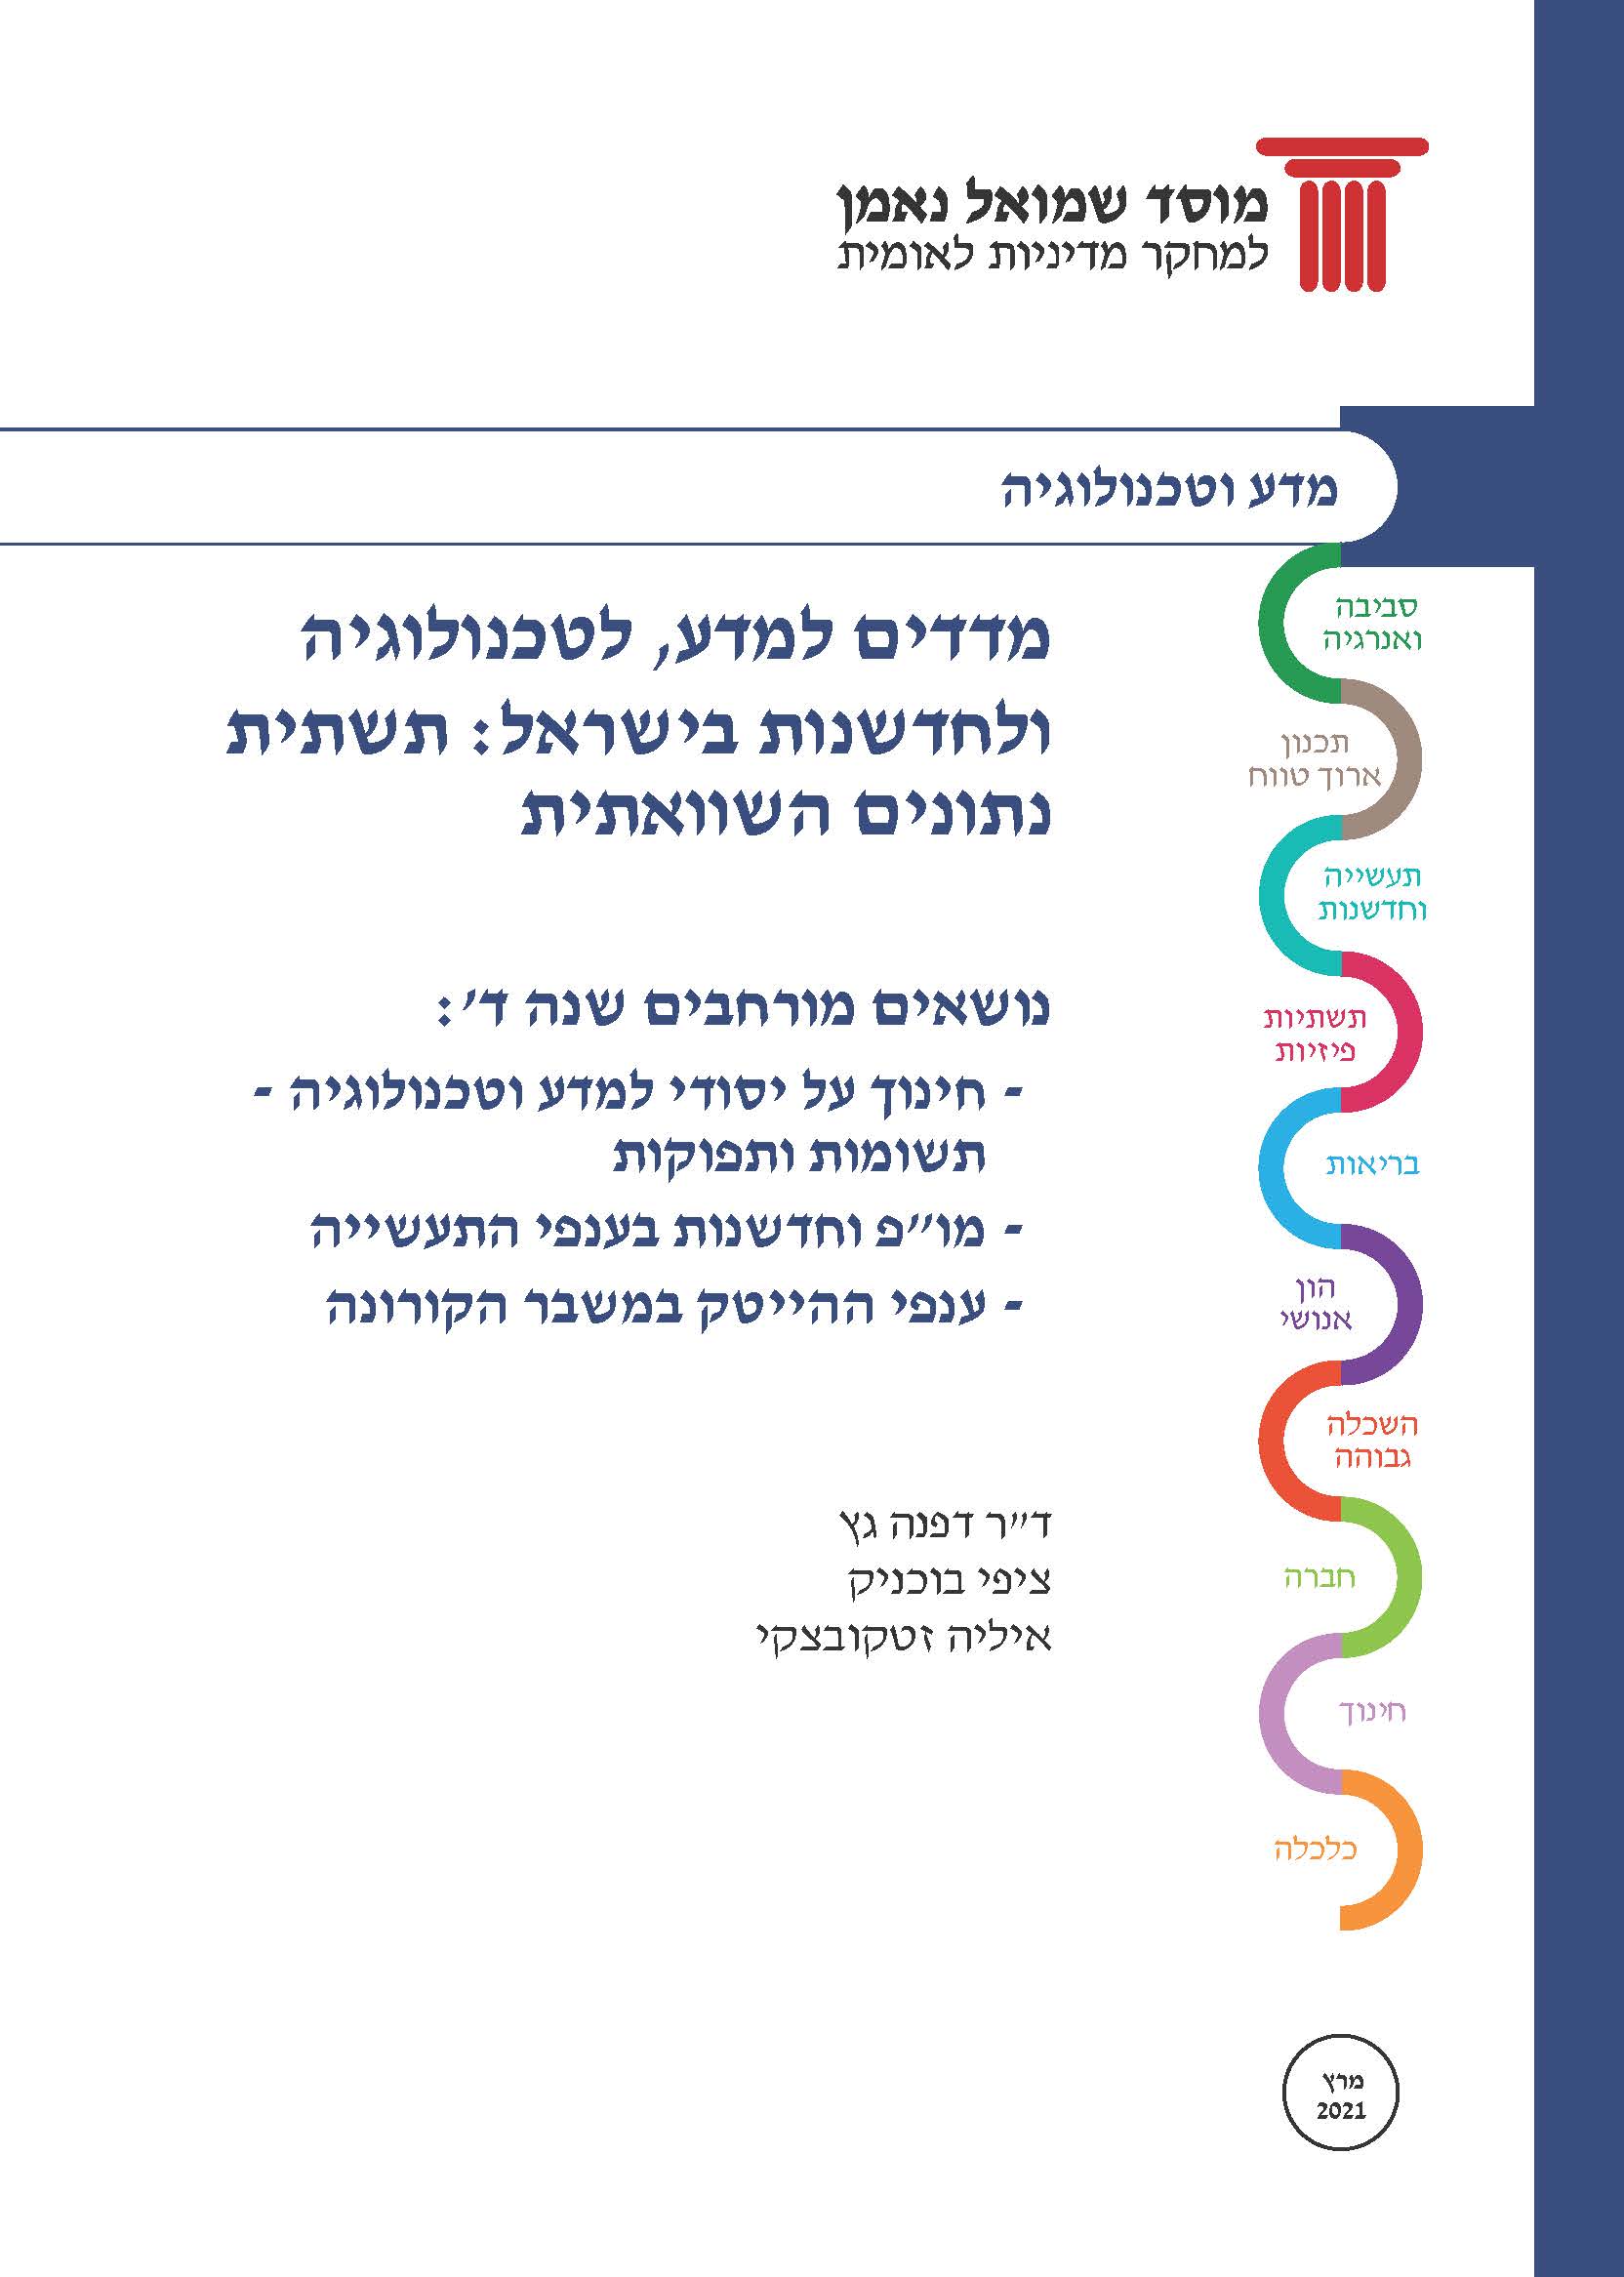 מדדים למדע, לטכנולוגיה ולחדשנות בישראל: תשתית נתונים. נושאים מורחבים